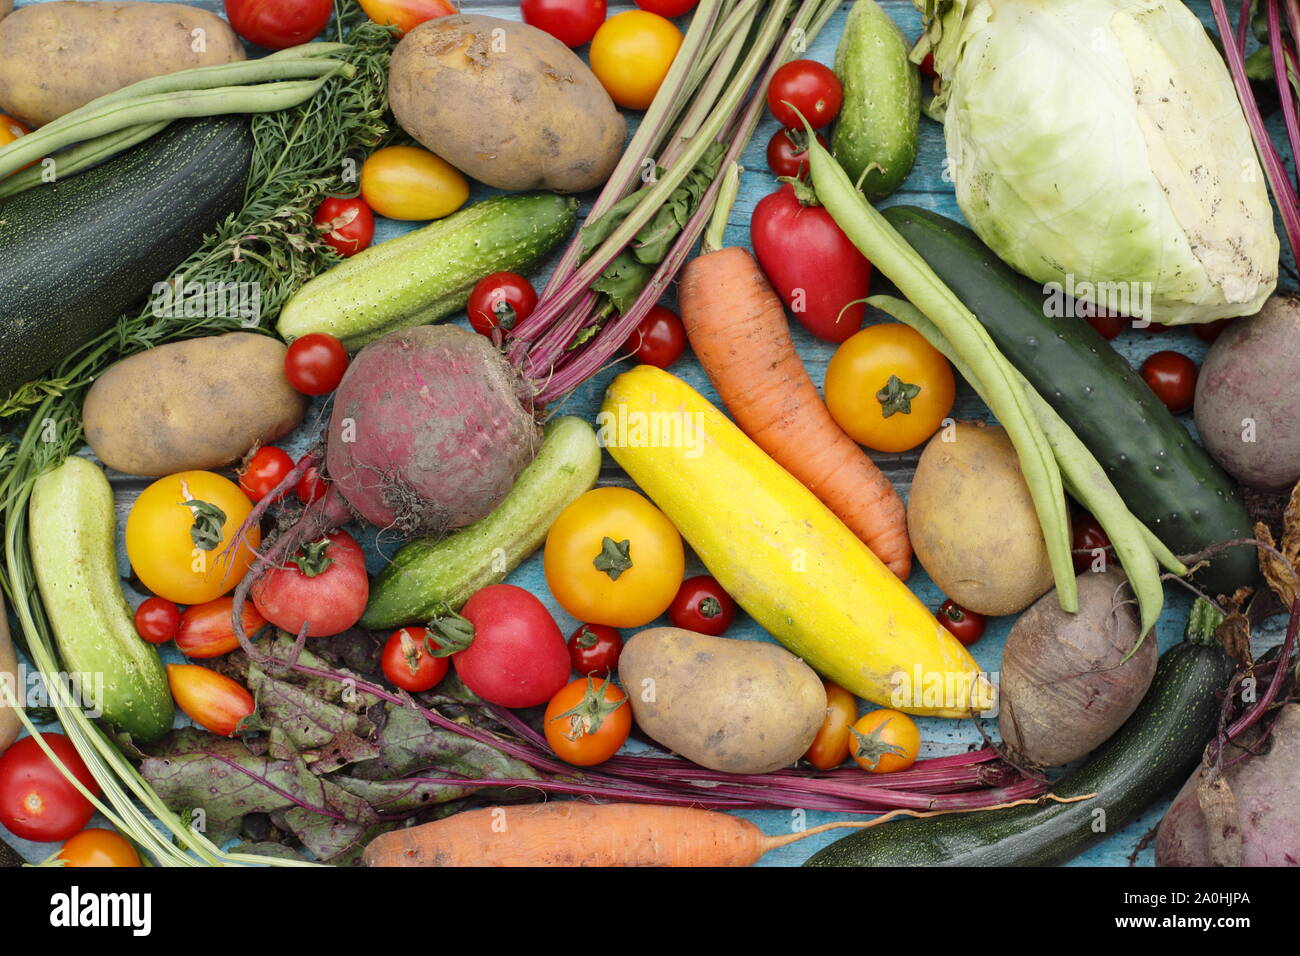 Frisch geerntete homegrown Bio Gemüse wie Zucchini, grüne Bohnen, rote Beete, Karotten, Kartoffeln, Tomaten, Gurken und Kohl. Großbritannien Stockfoto